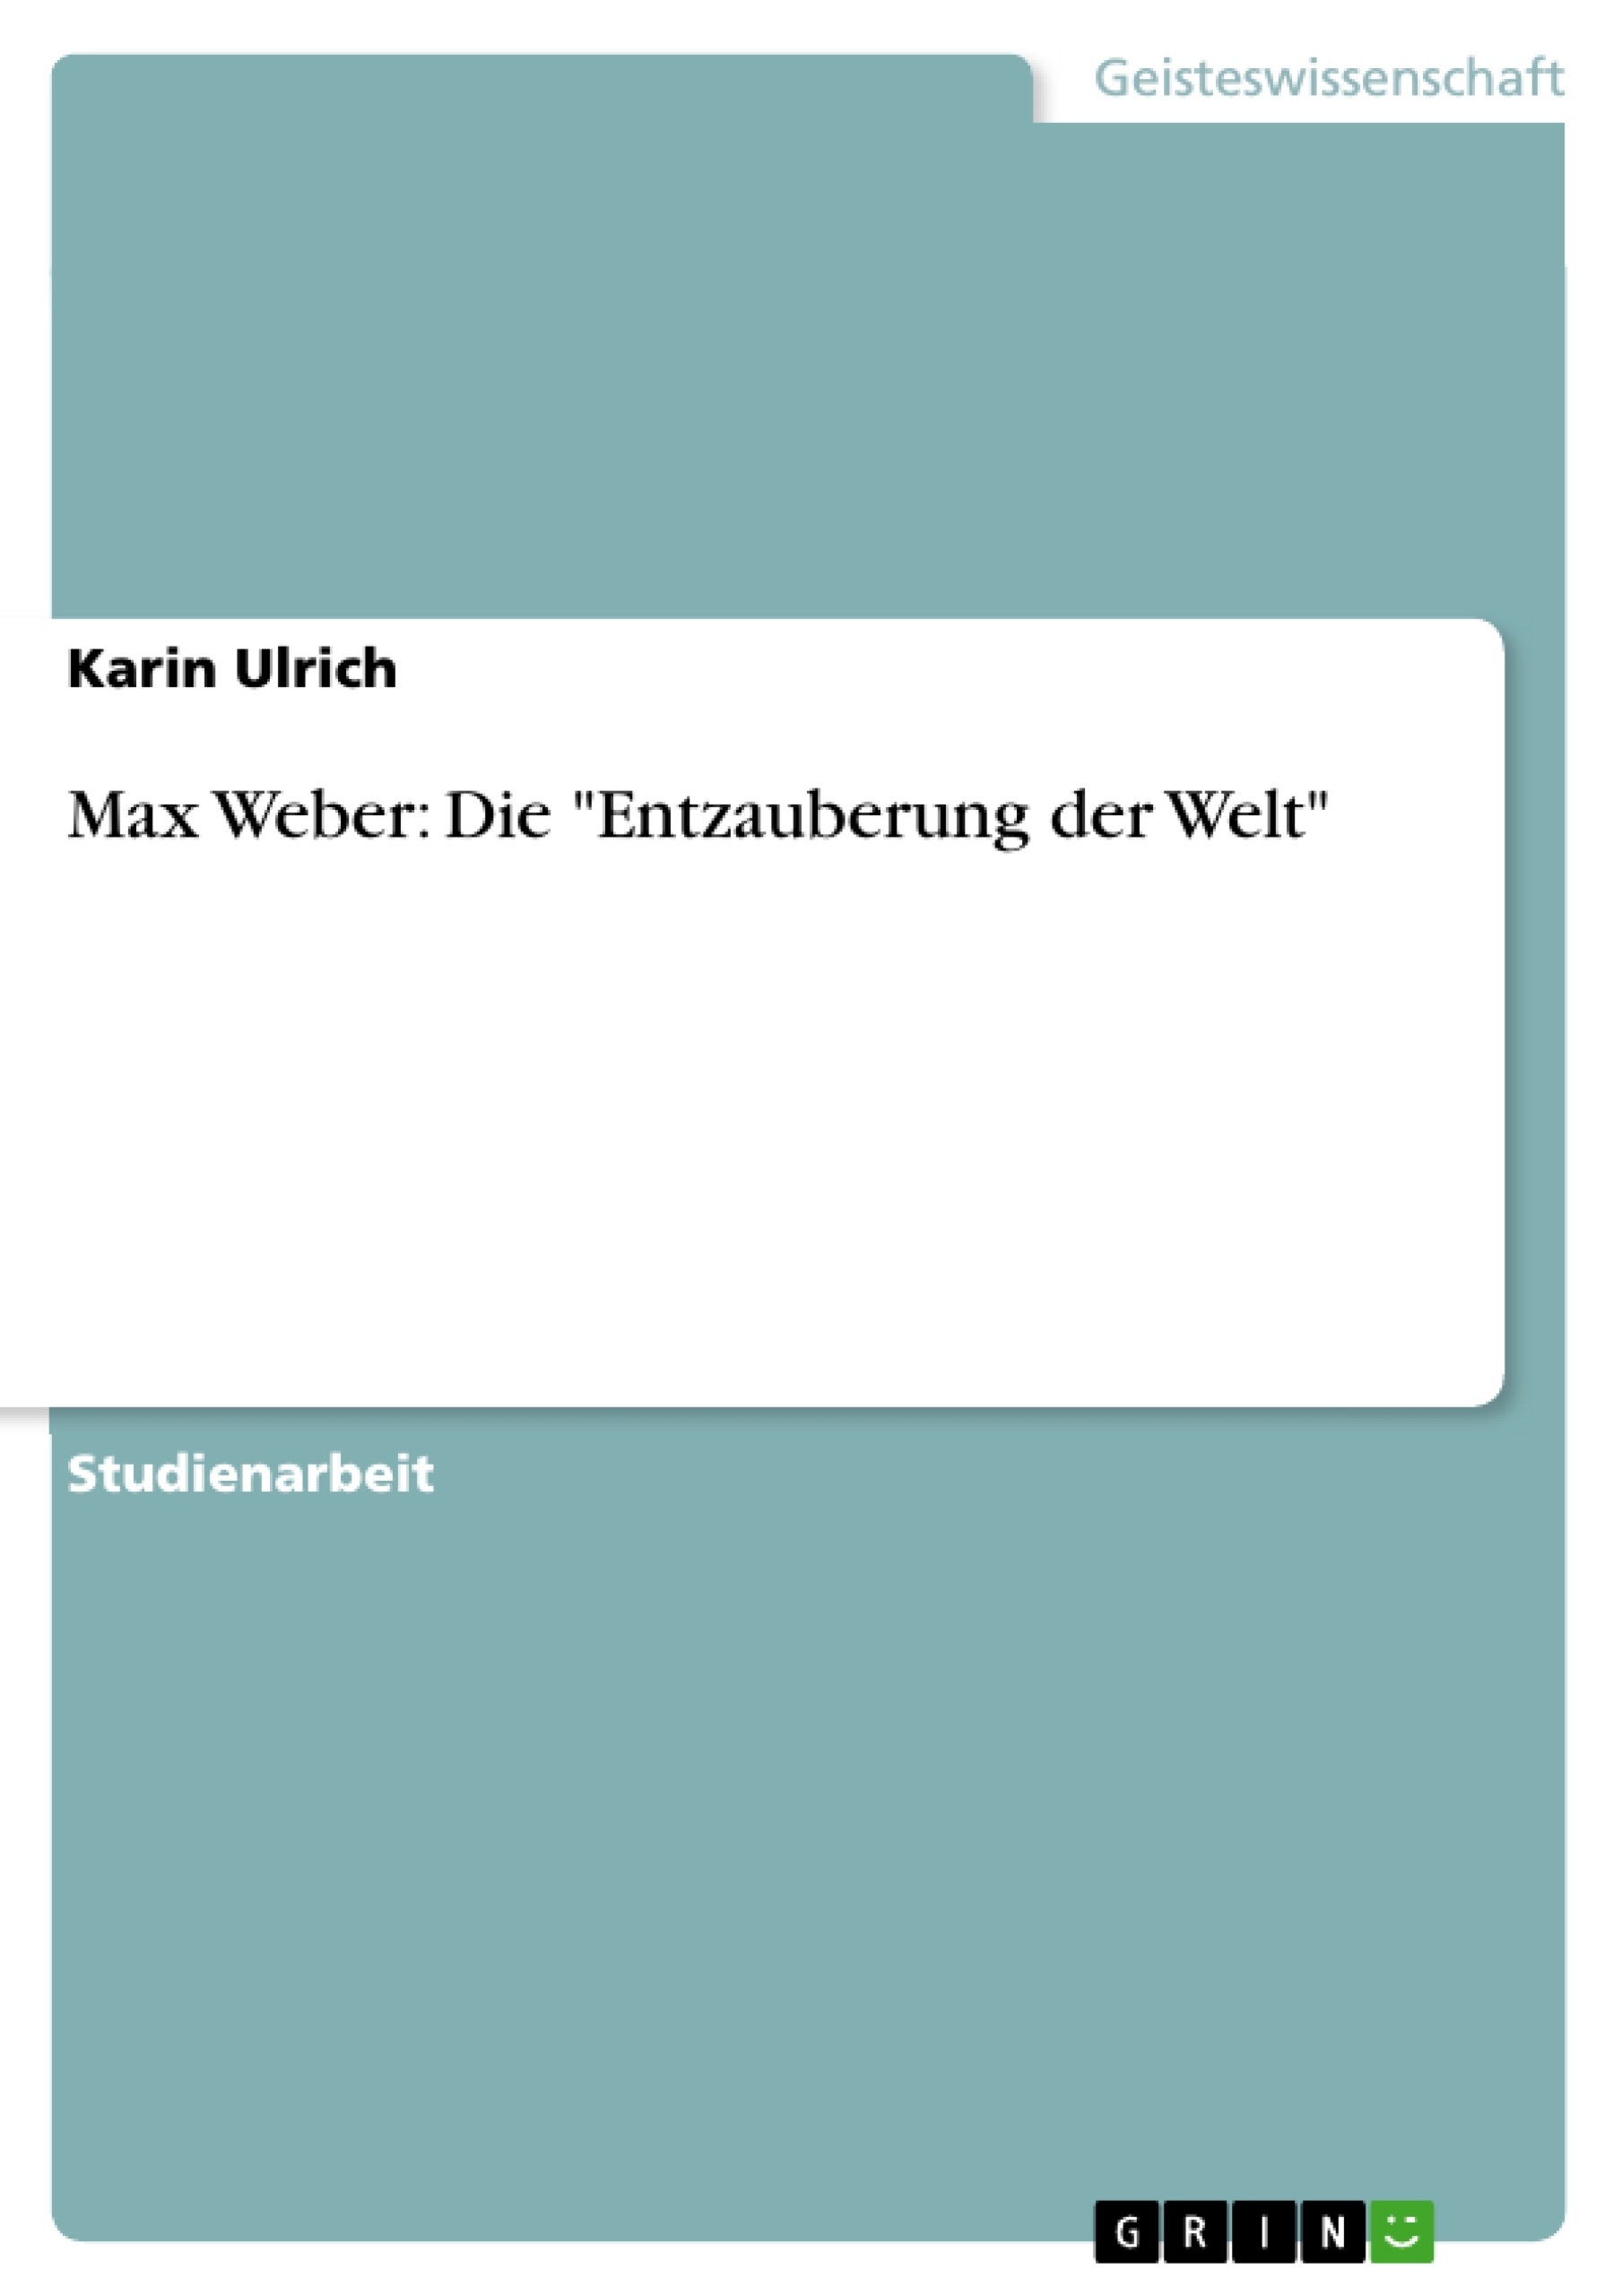 Titre: Max Weber: Die "Entzauberung der Welt"